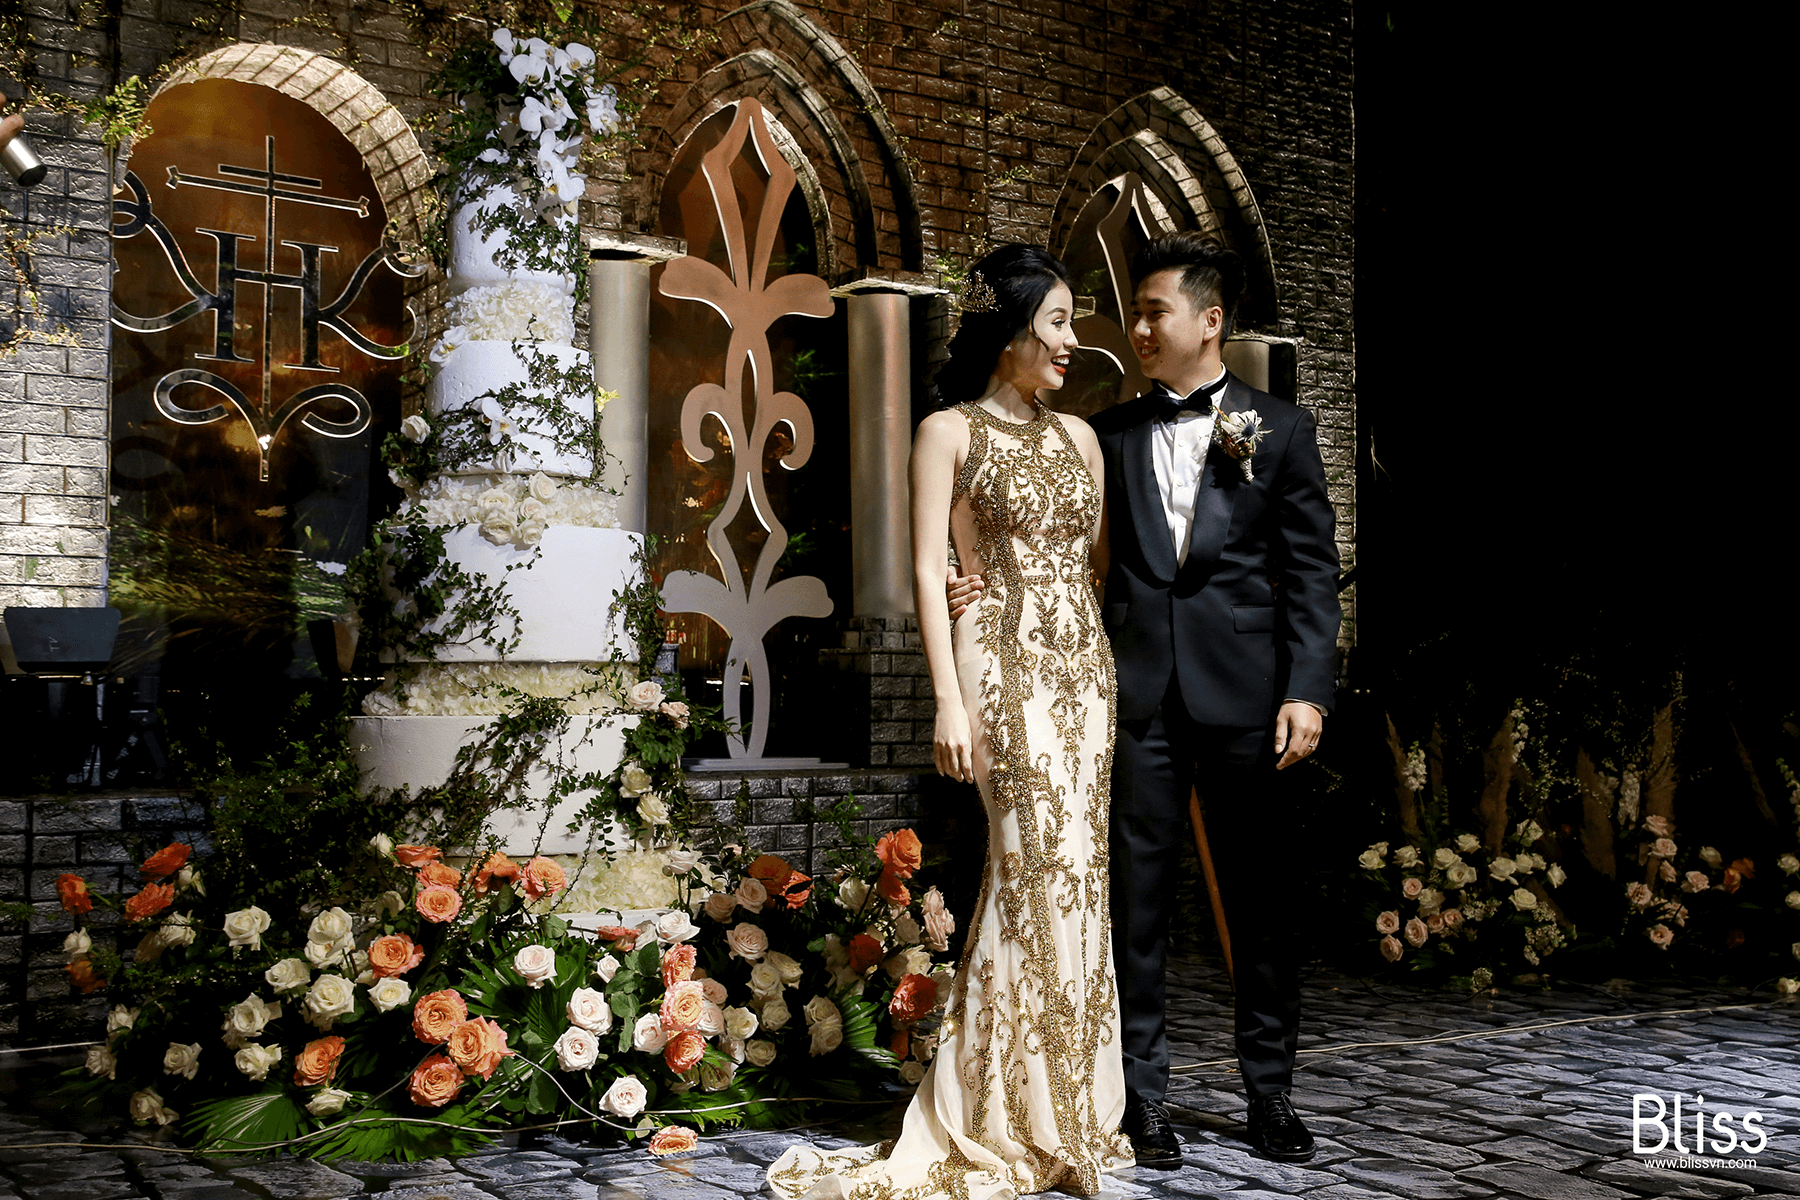 Which unit is the best destination wedding planner Vietnam?